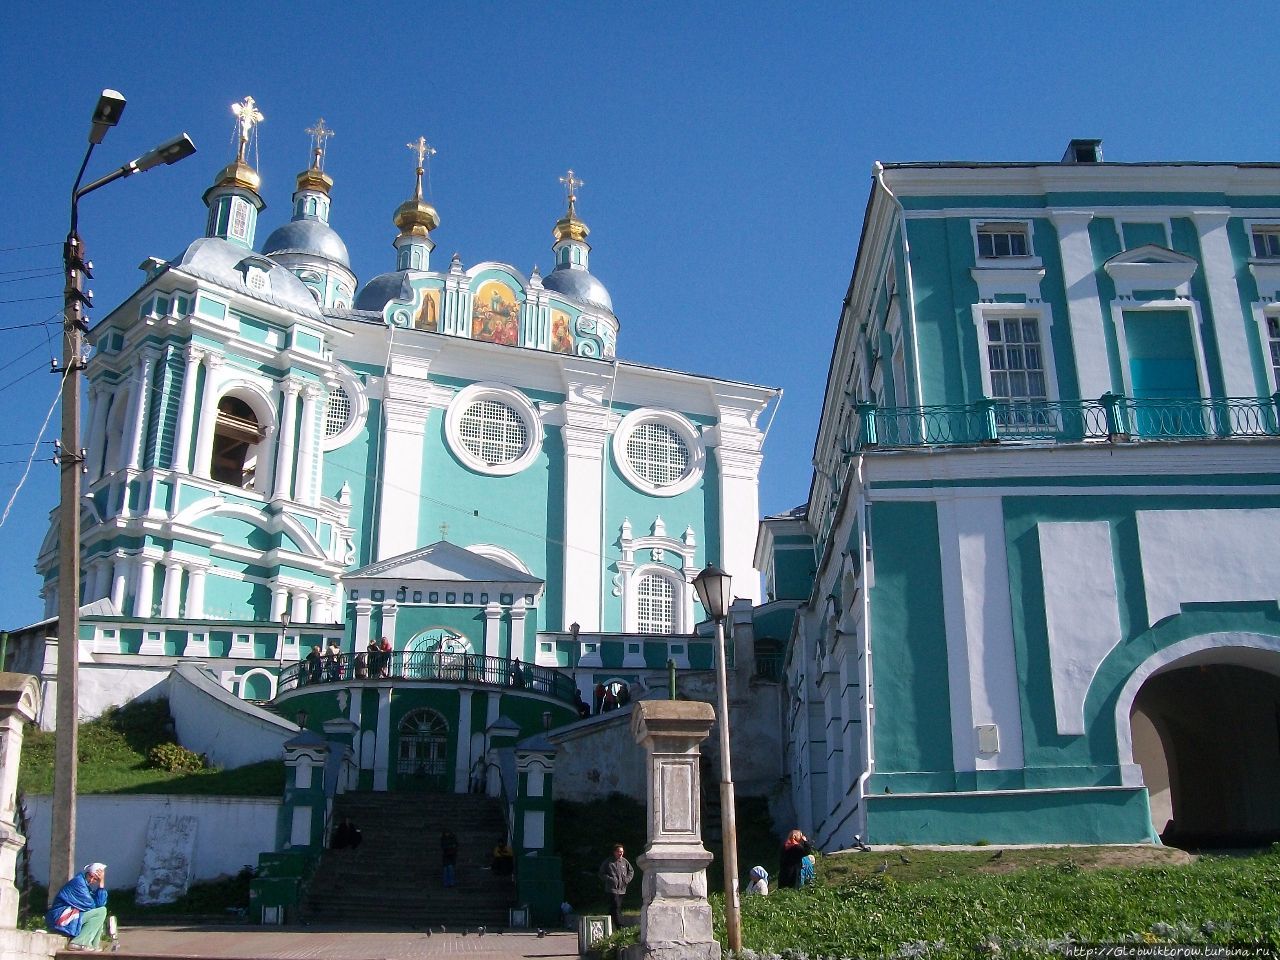 Прогулка по историческому центру Смоленск, Россия